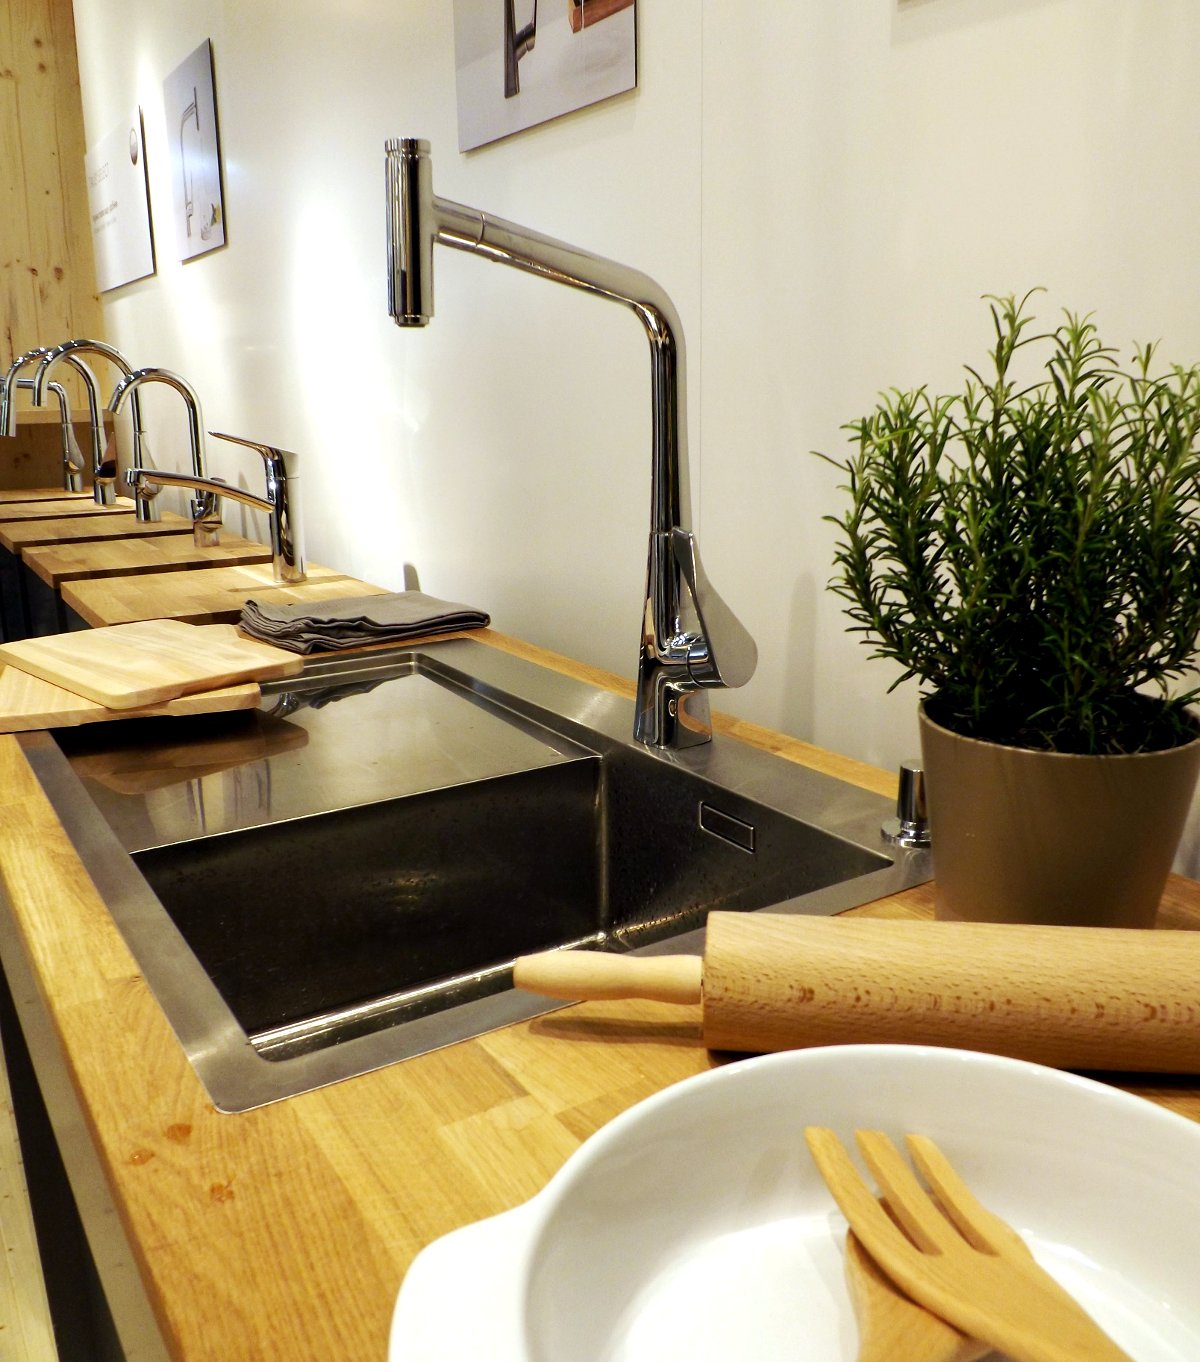 Кухонный смеситель из коллекции Hansgrohe METRIS на выставке МосБилд-2015